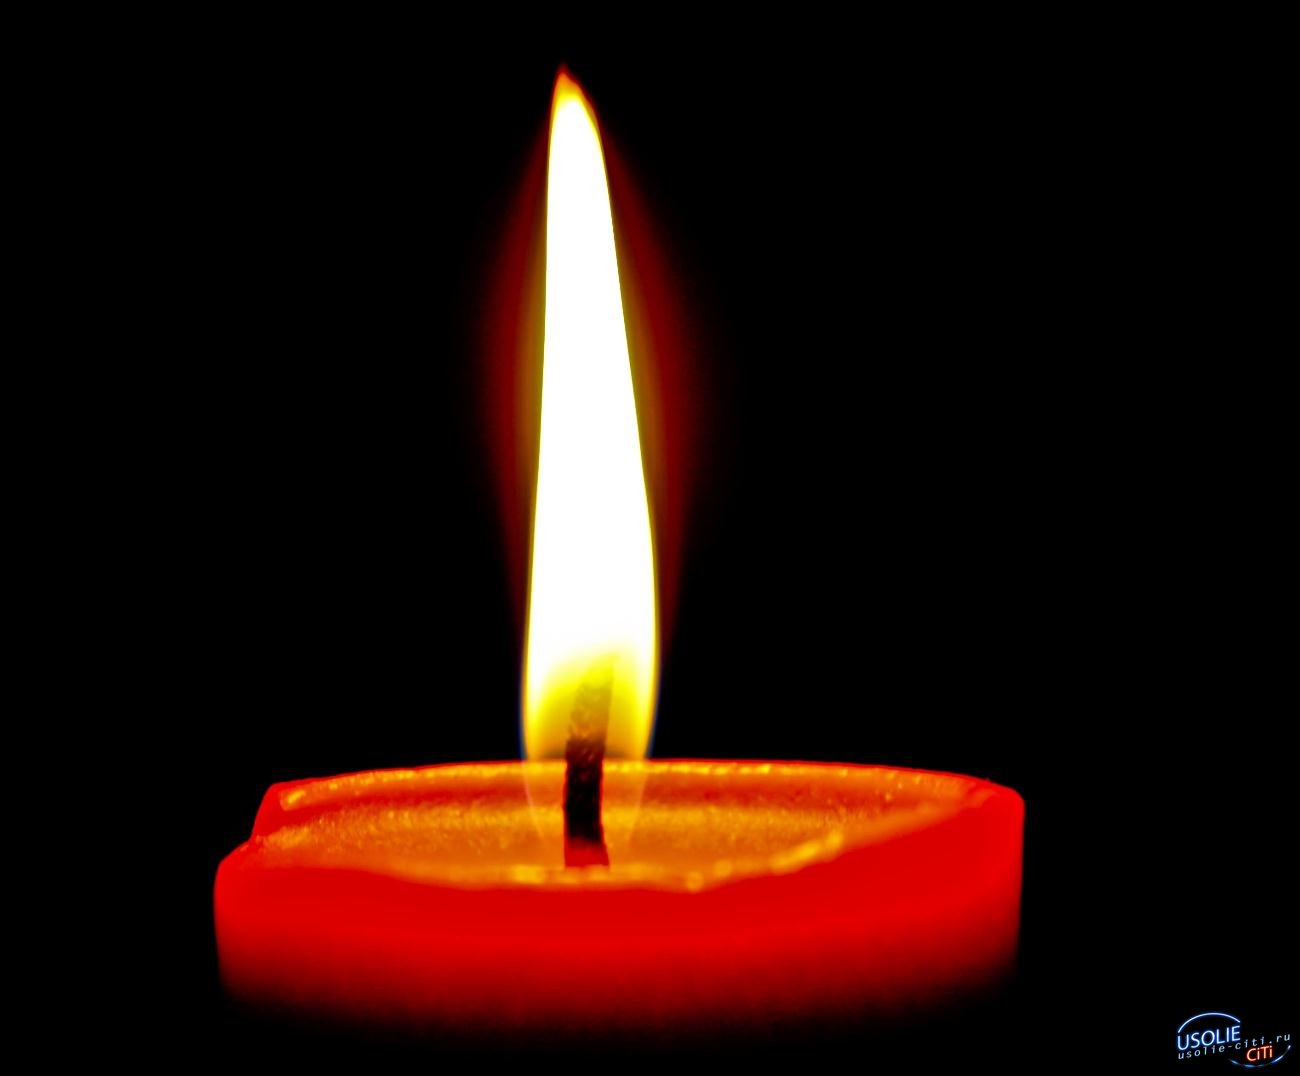 Усольчанин был убит в Харьковской области на Украине: герои - земляки